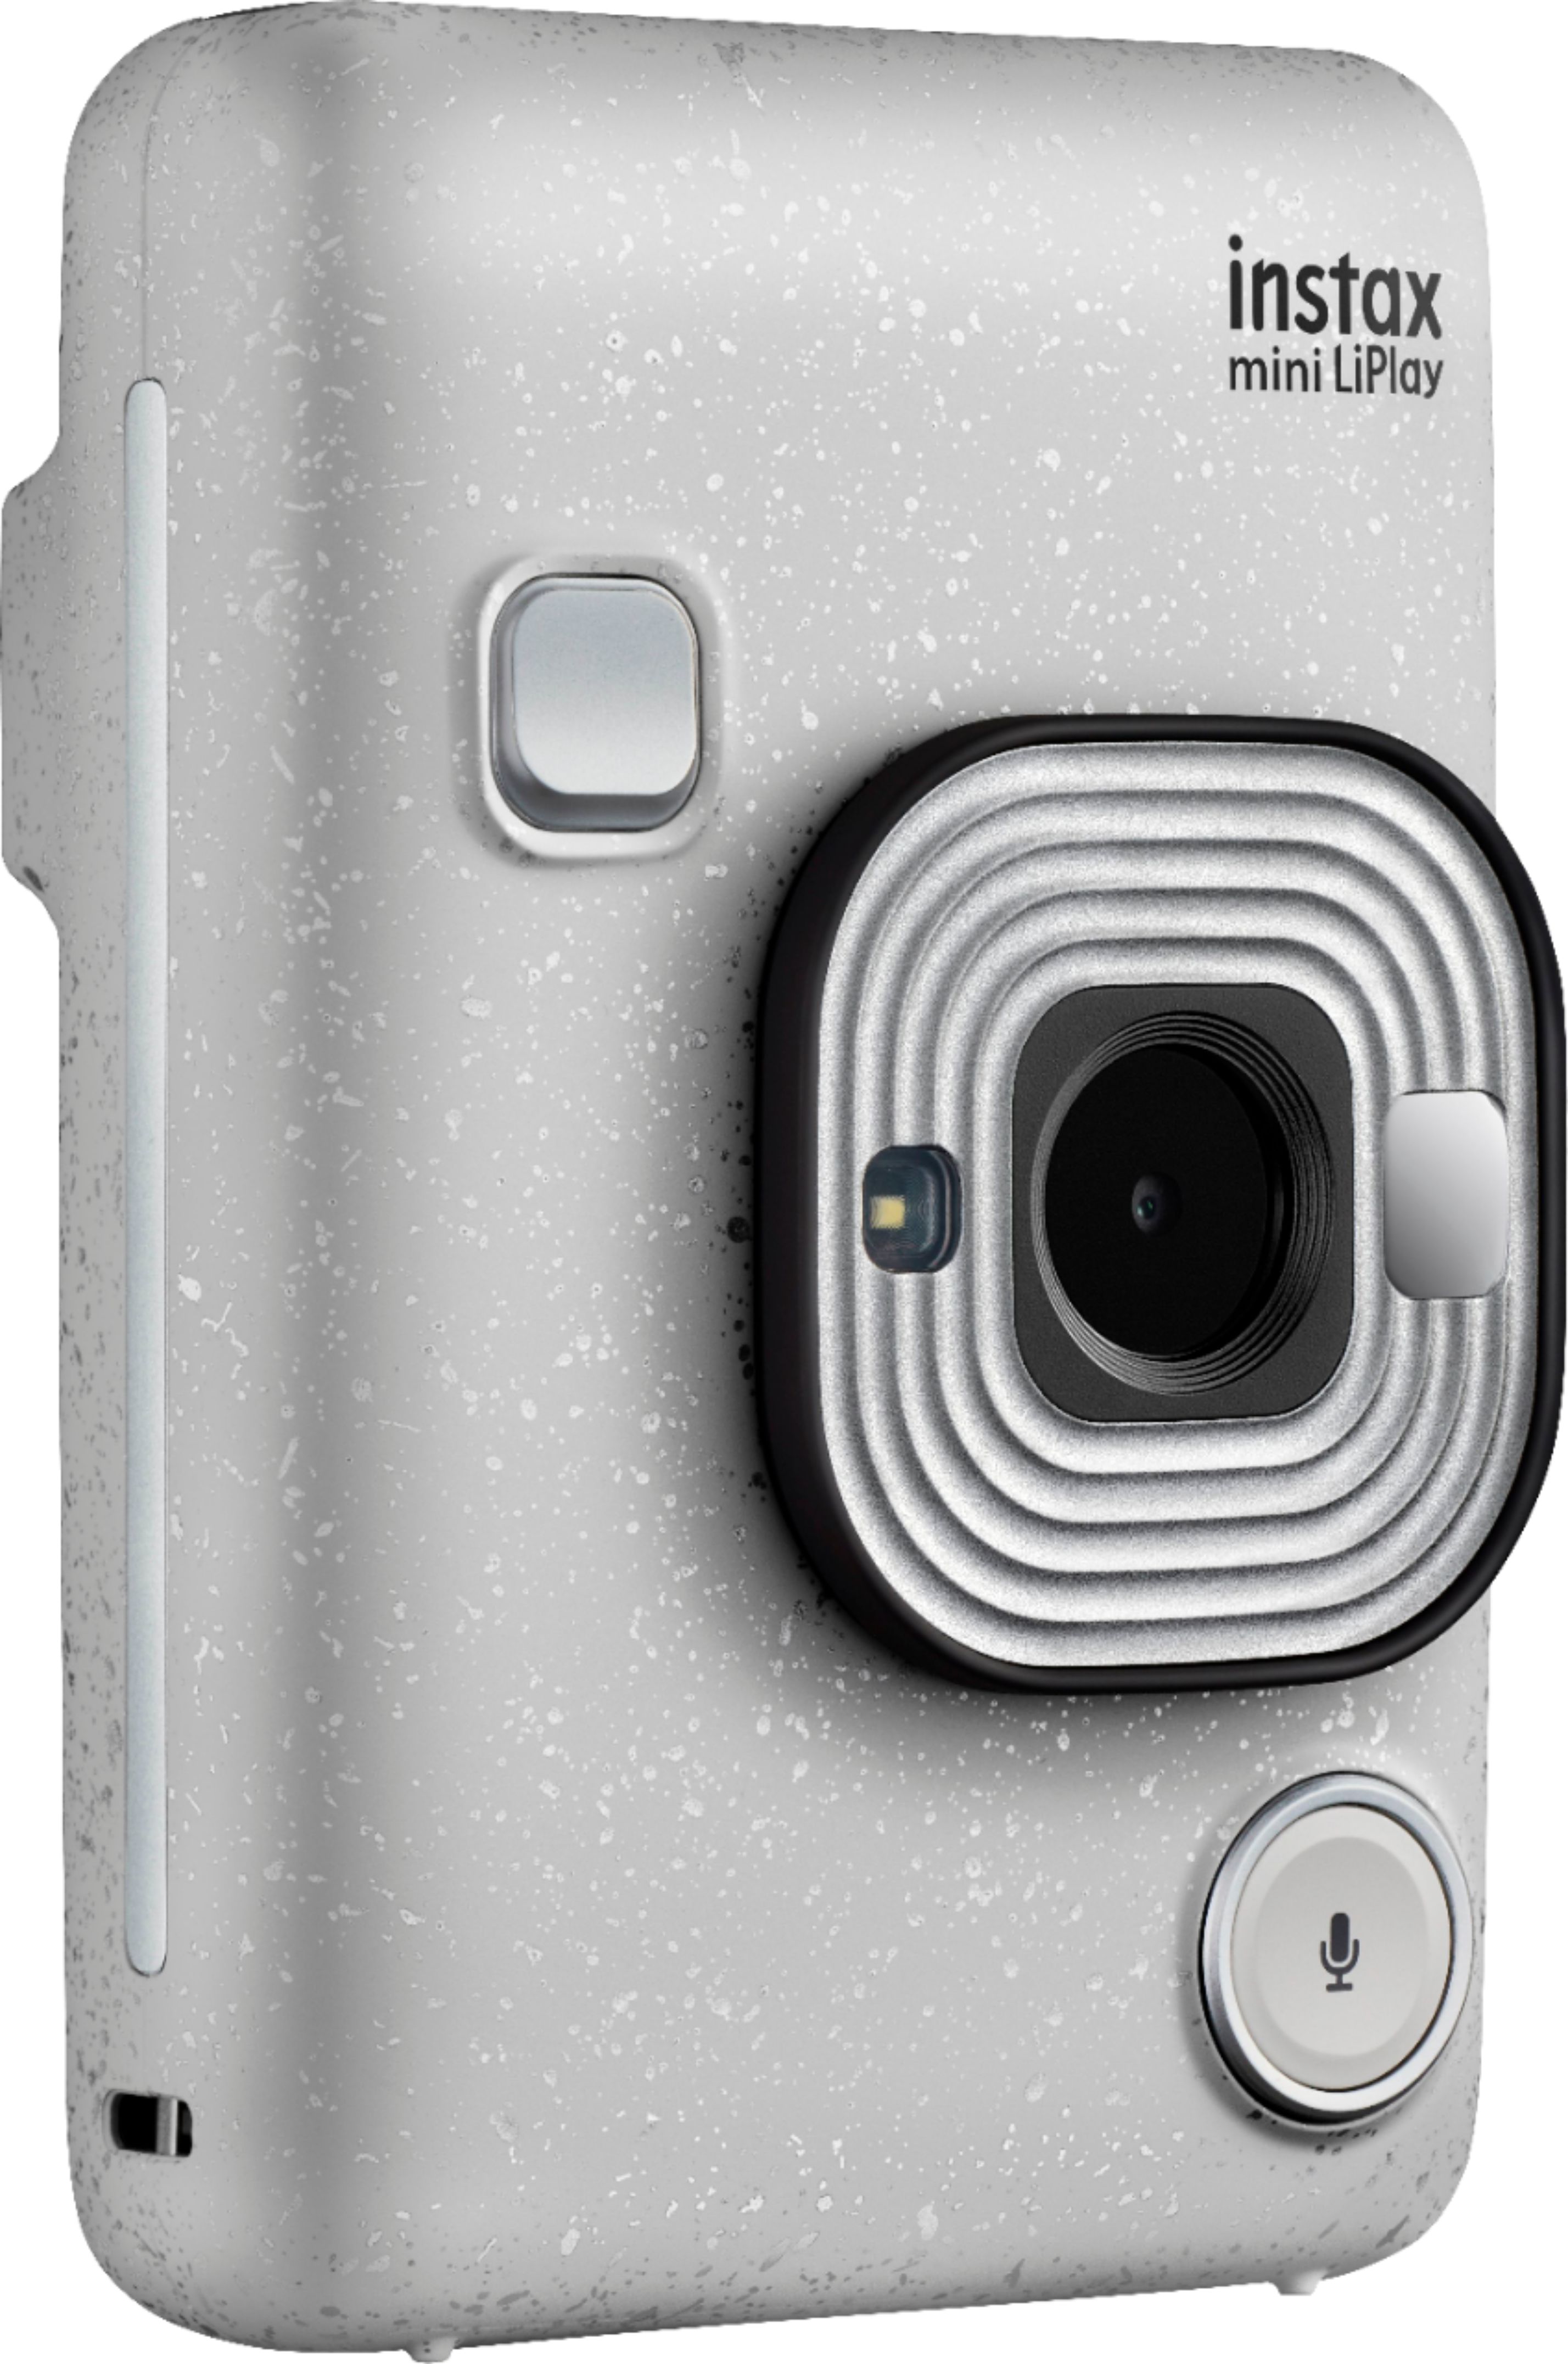 カメラ デジタルカメラ Best Buy: Fujifilm instax mini LiPlay Instant Film Camera Stone 